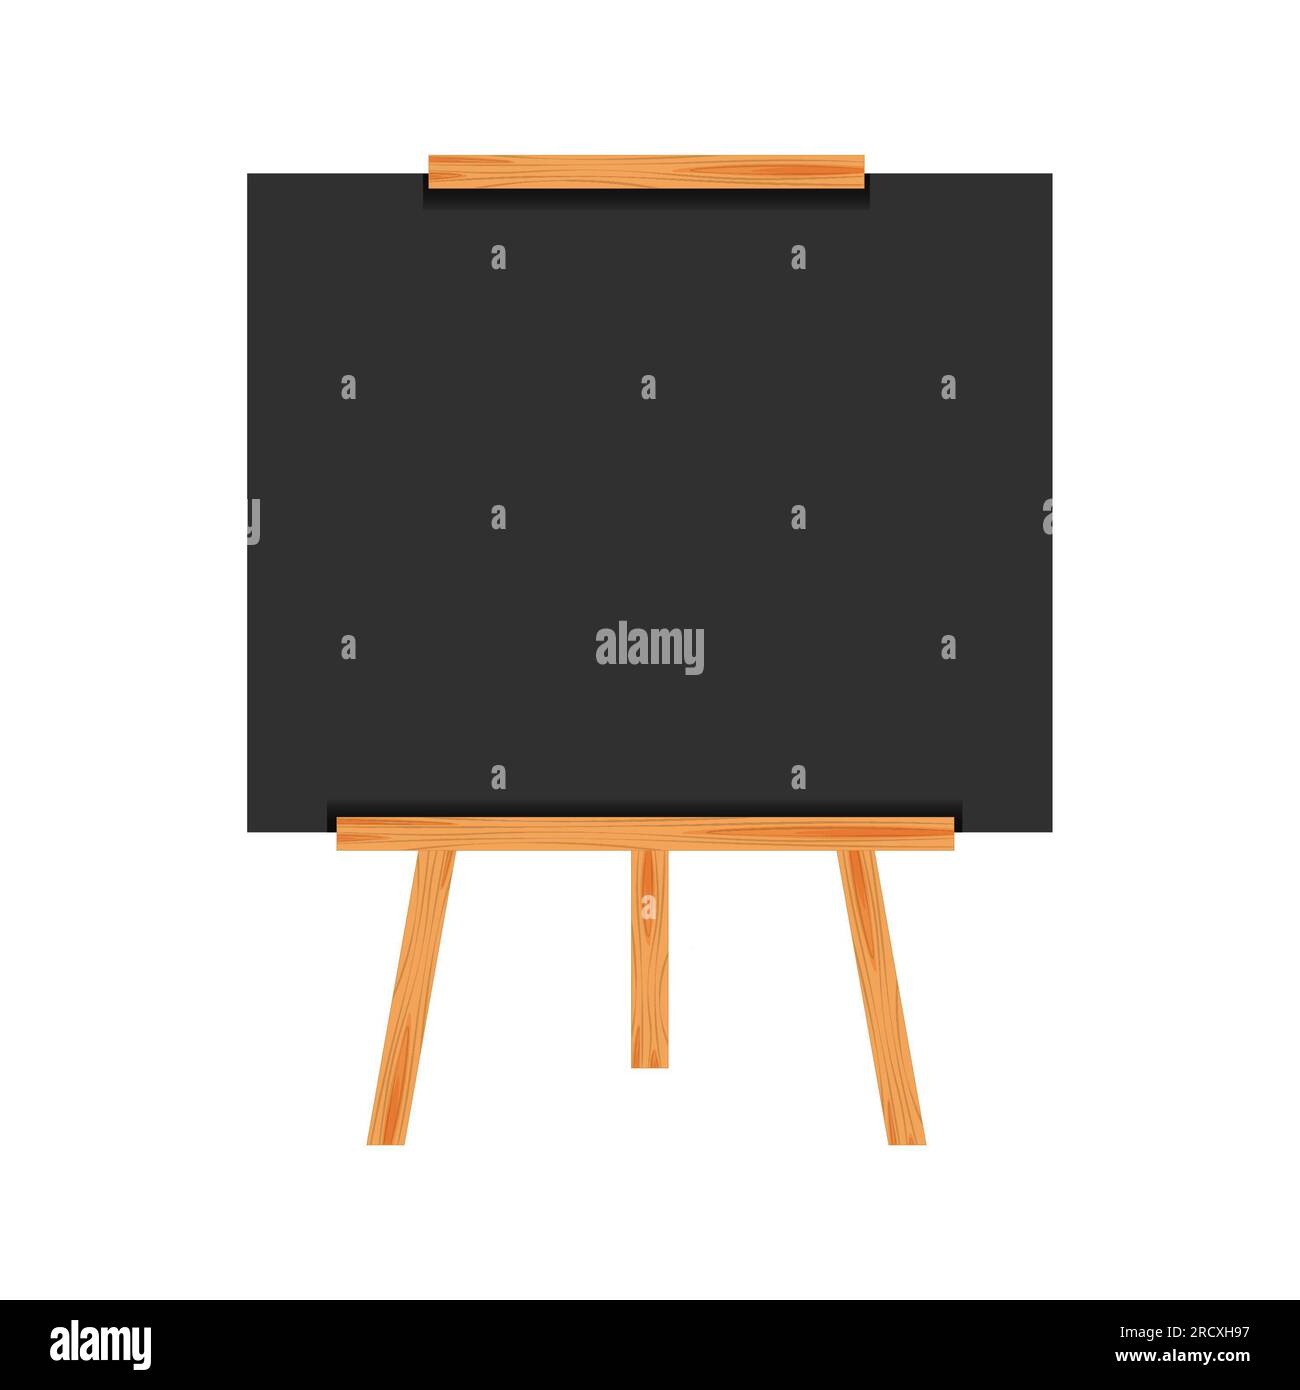 Caballete de madera horizontales apoyando un pizarrón o pizarra, vacío de  color oscuro de la Pizarra placa con marco de madera aislado en Wh  Fotografía de stock - Alamy